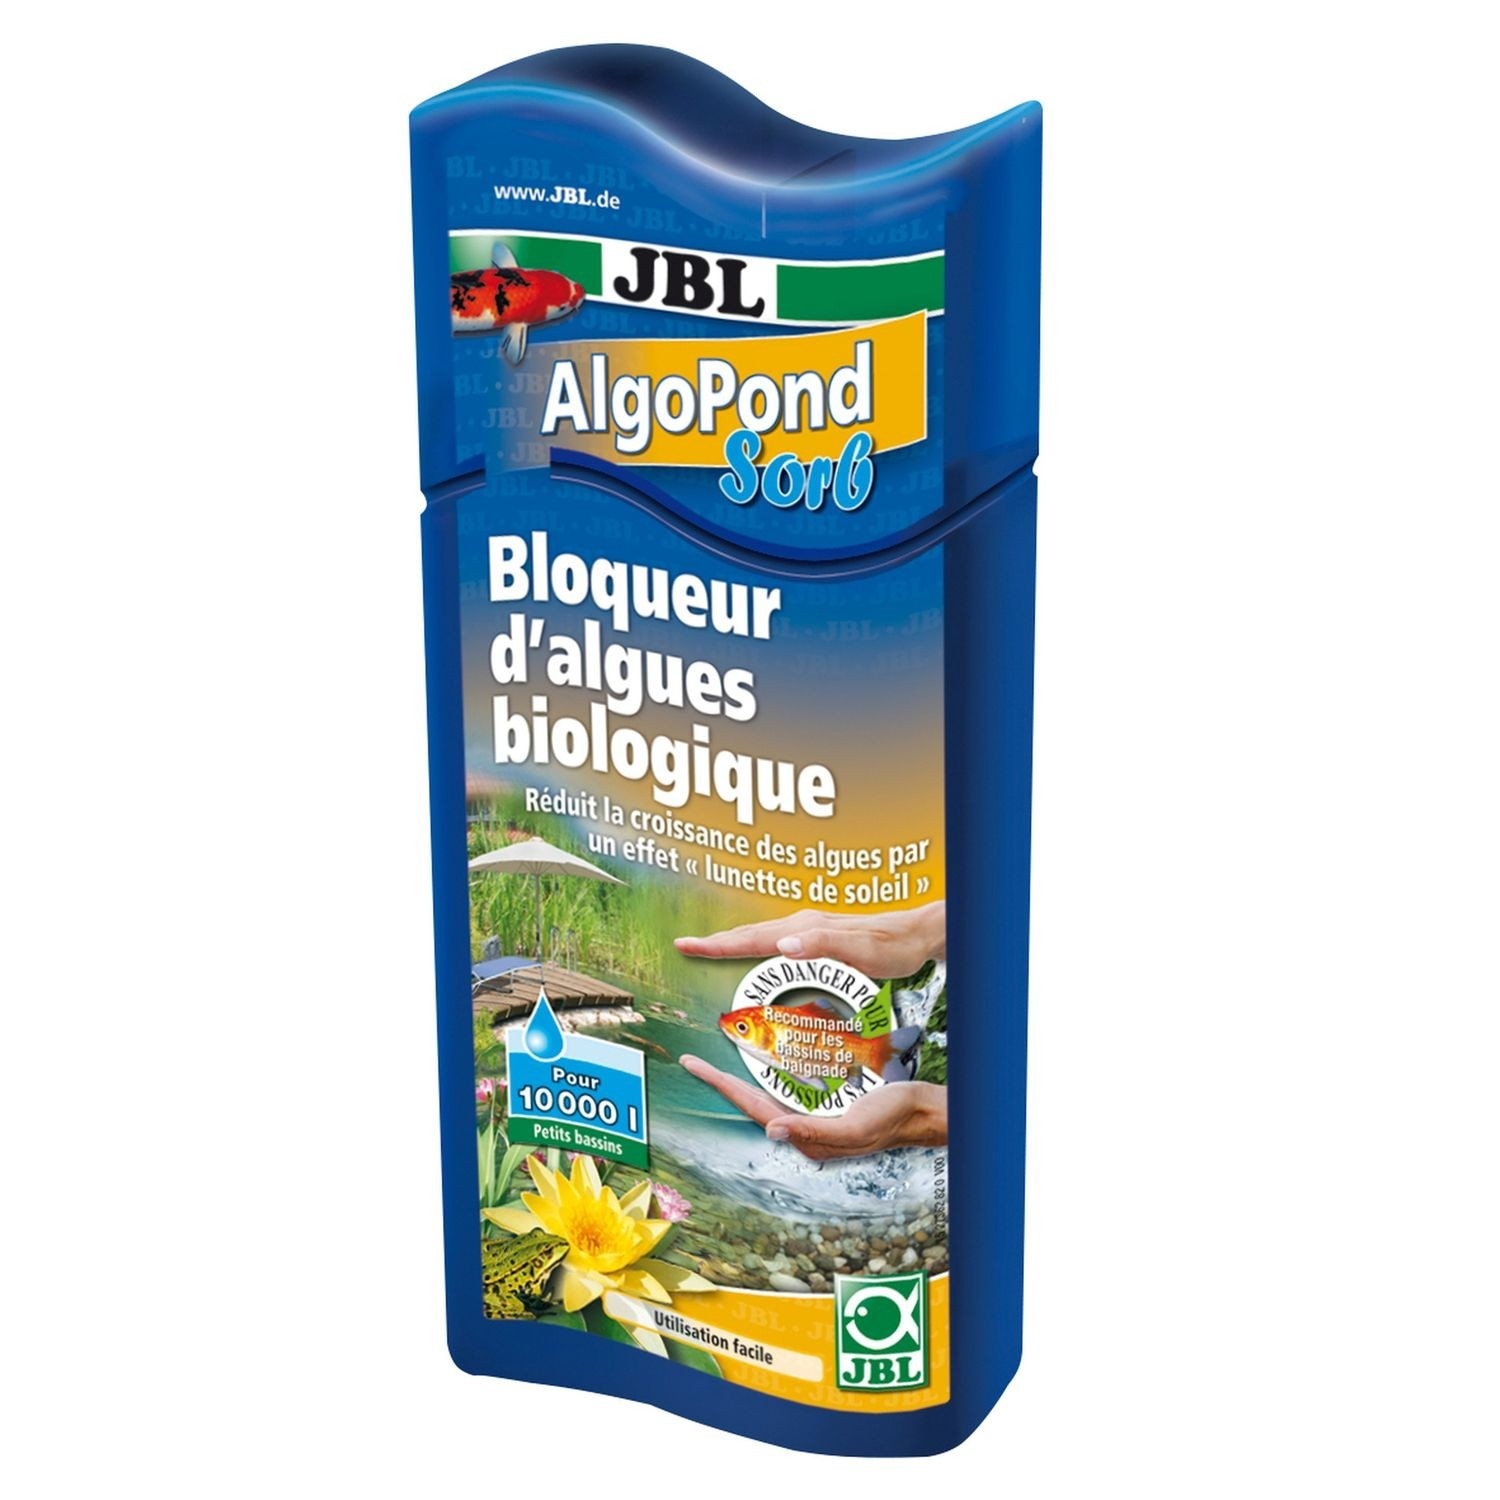 JBL AlgoPond Sorb Bloqueur d'algues biologiques